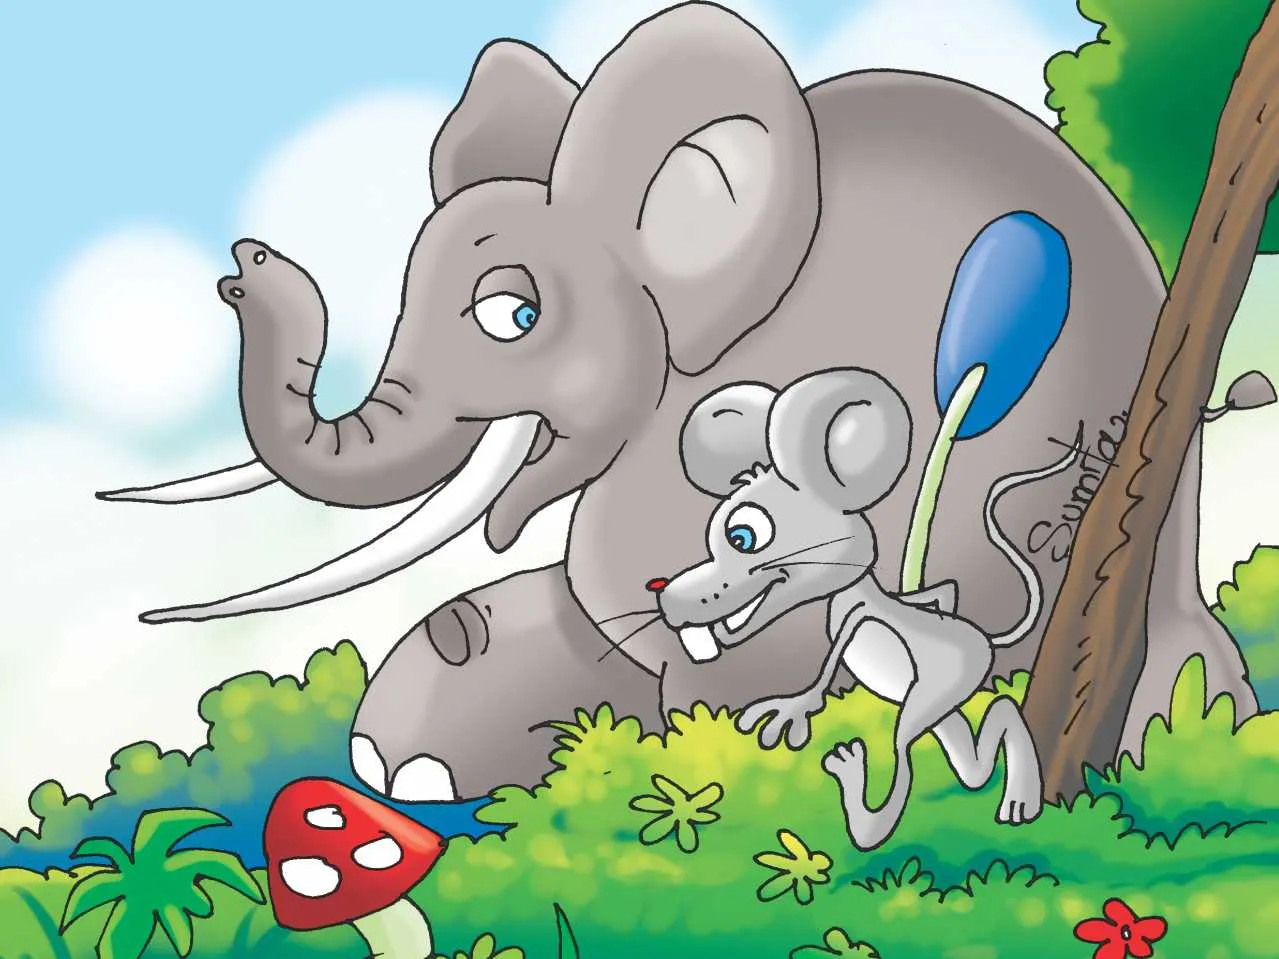 Mouse and elephant cartoon image